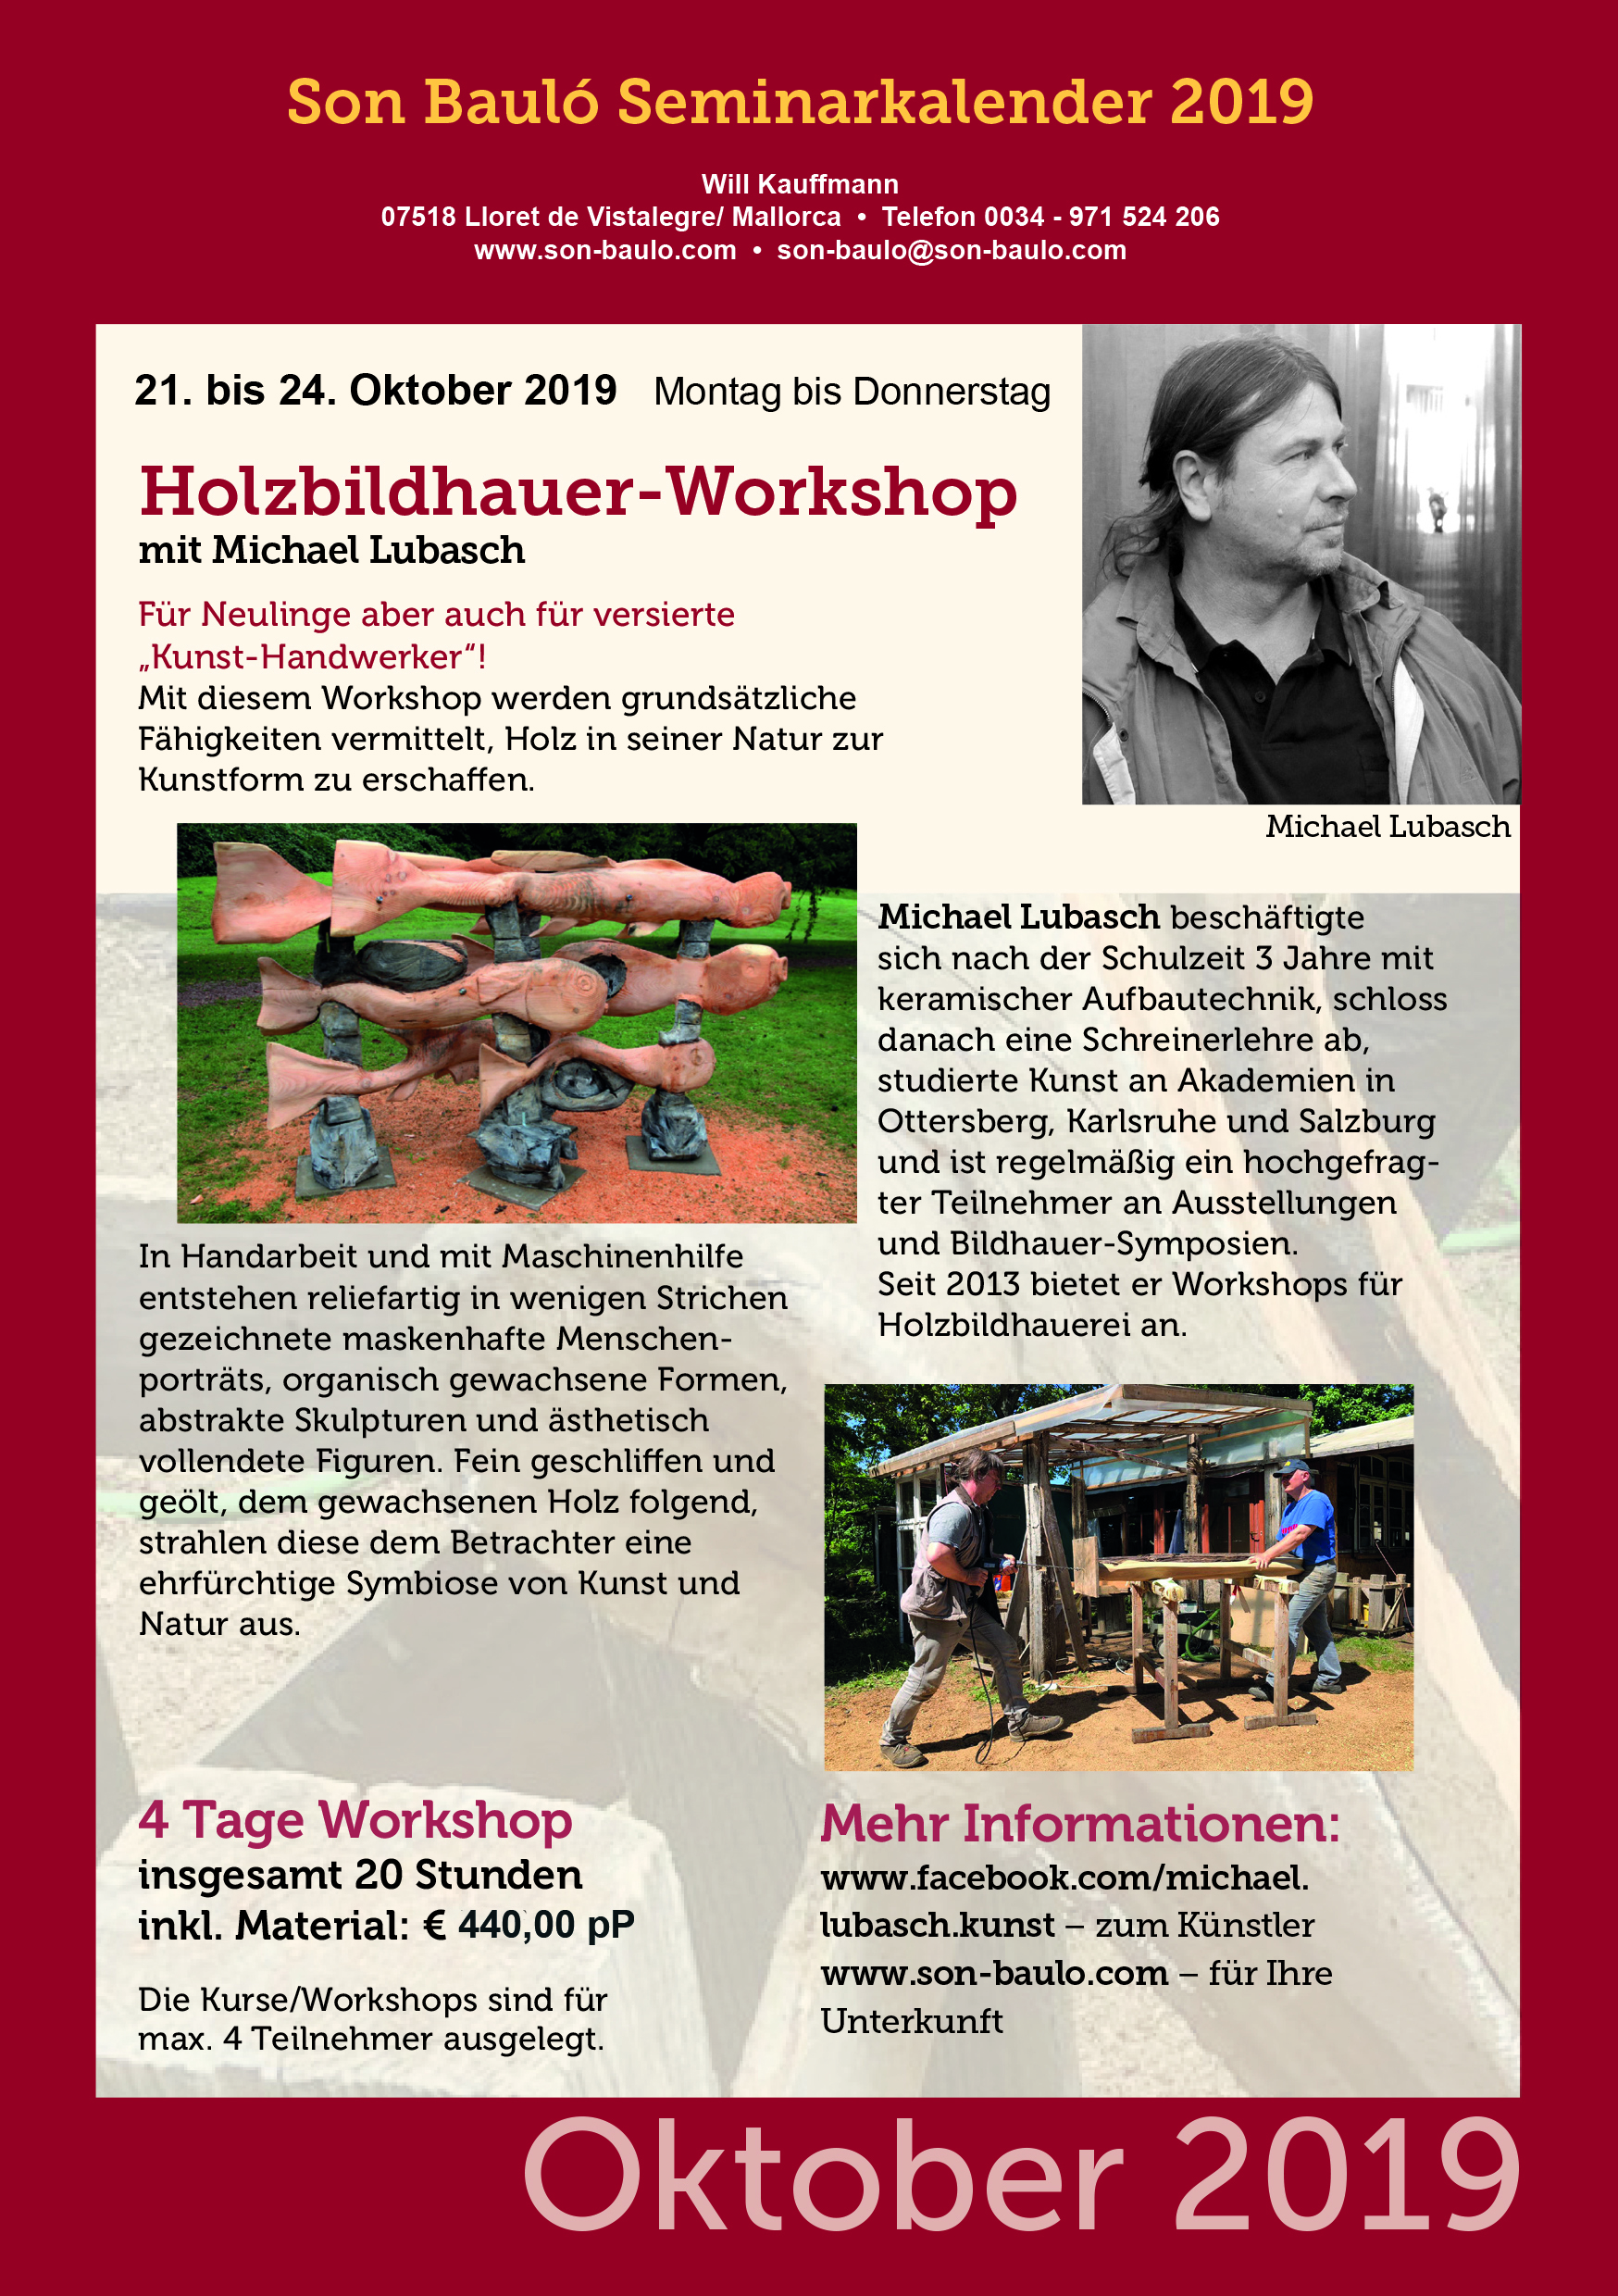 Michael Lubasch, Holzbildhauer Workshop 01.10.-24.10.